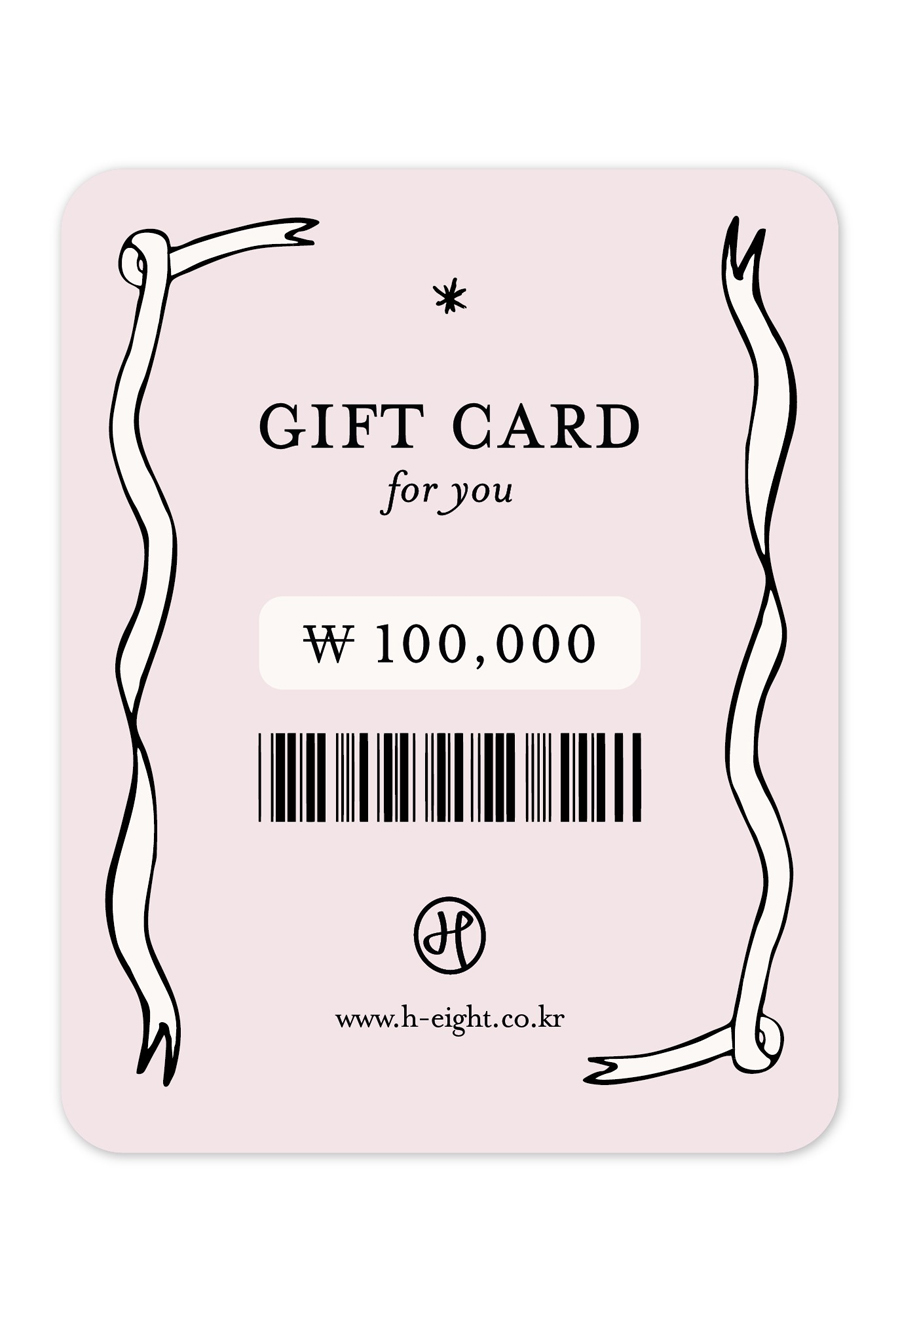 GIFT CARD (지급액 110,000원)